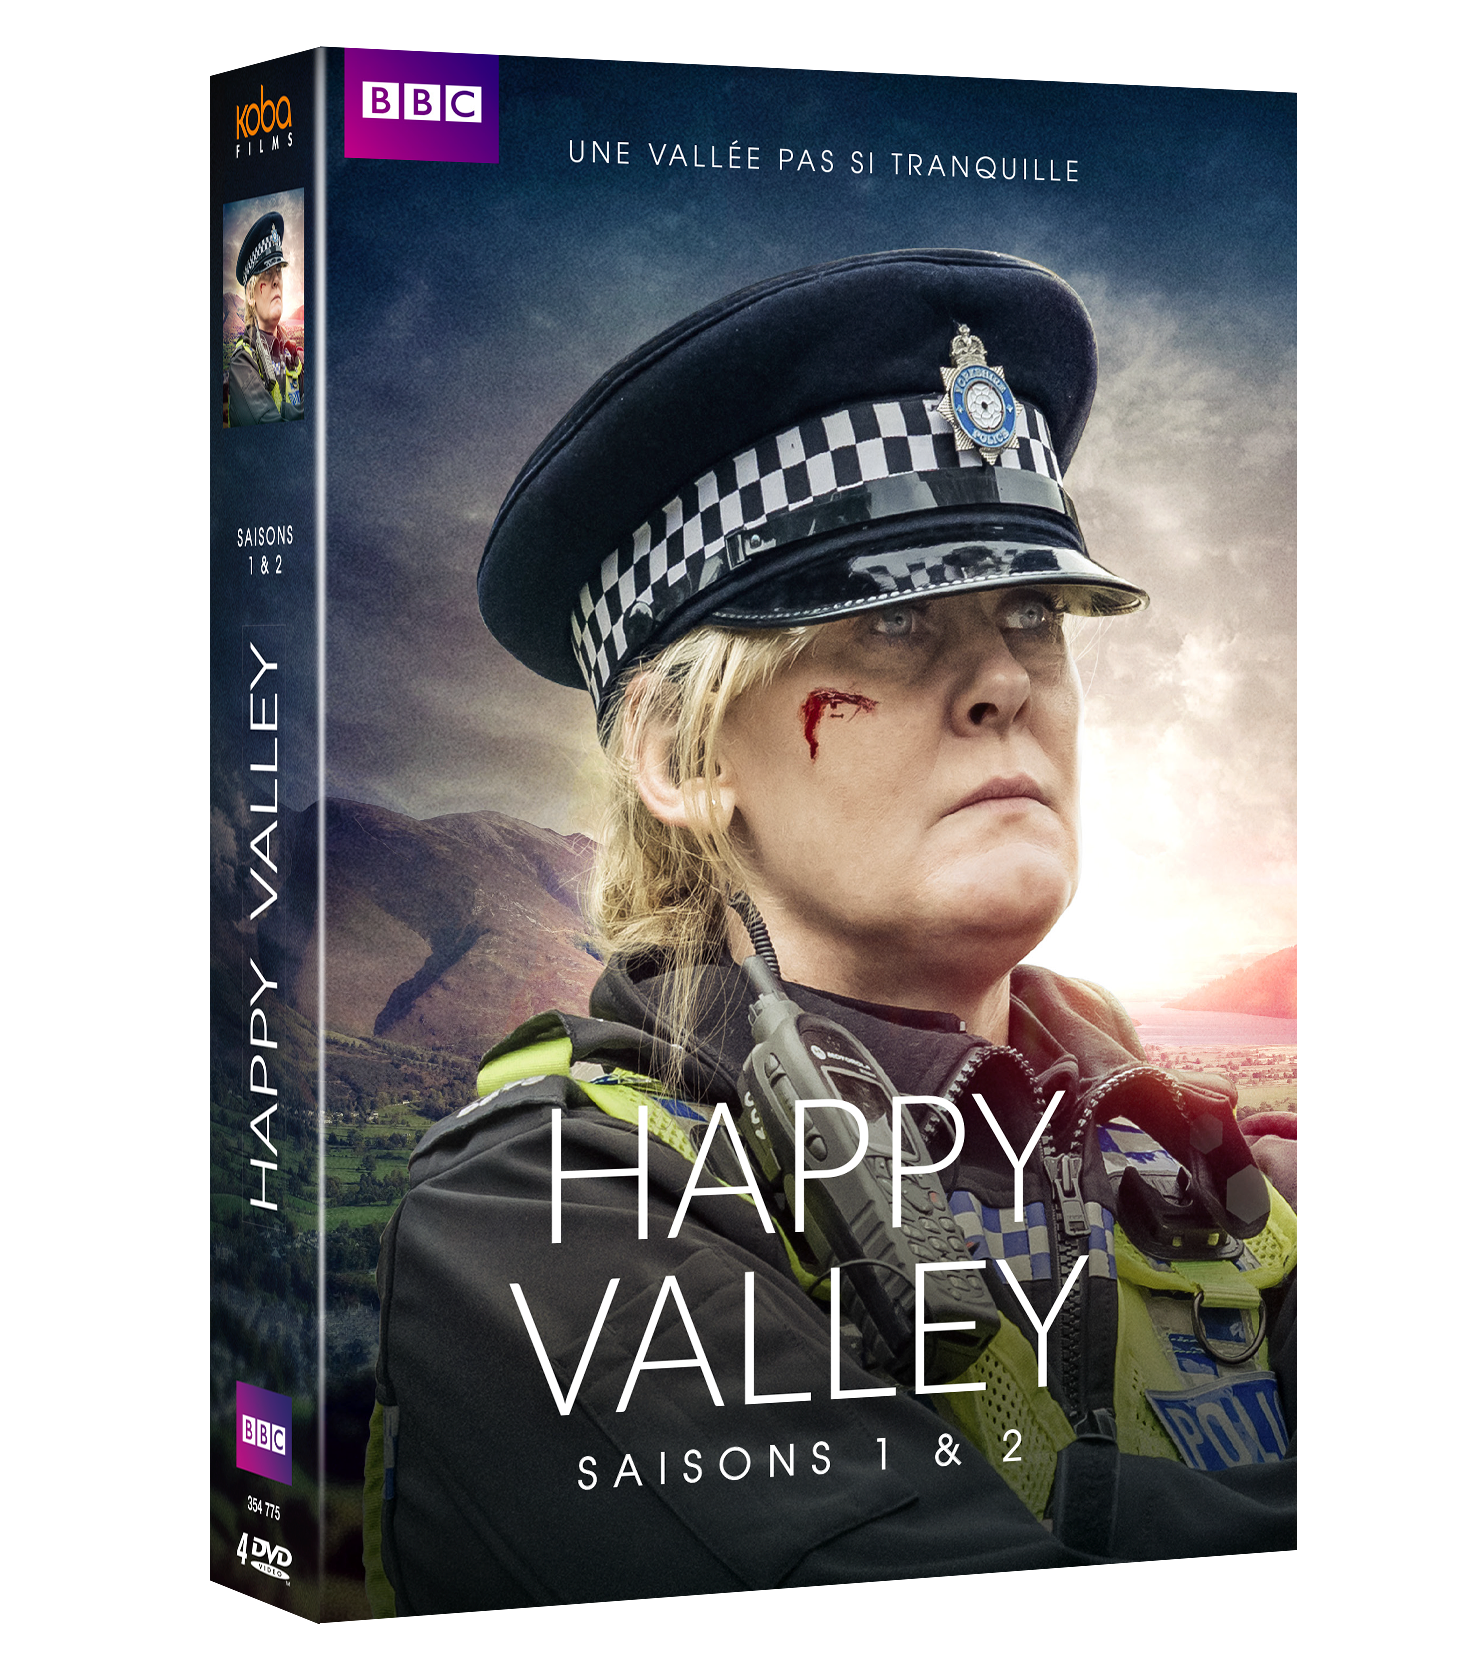 HAPPY VALLEY - SAISONS 1 & 2 (4 DVD)